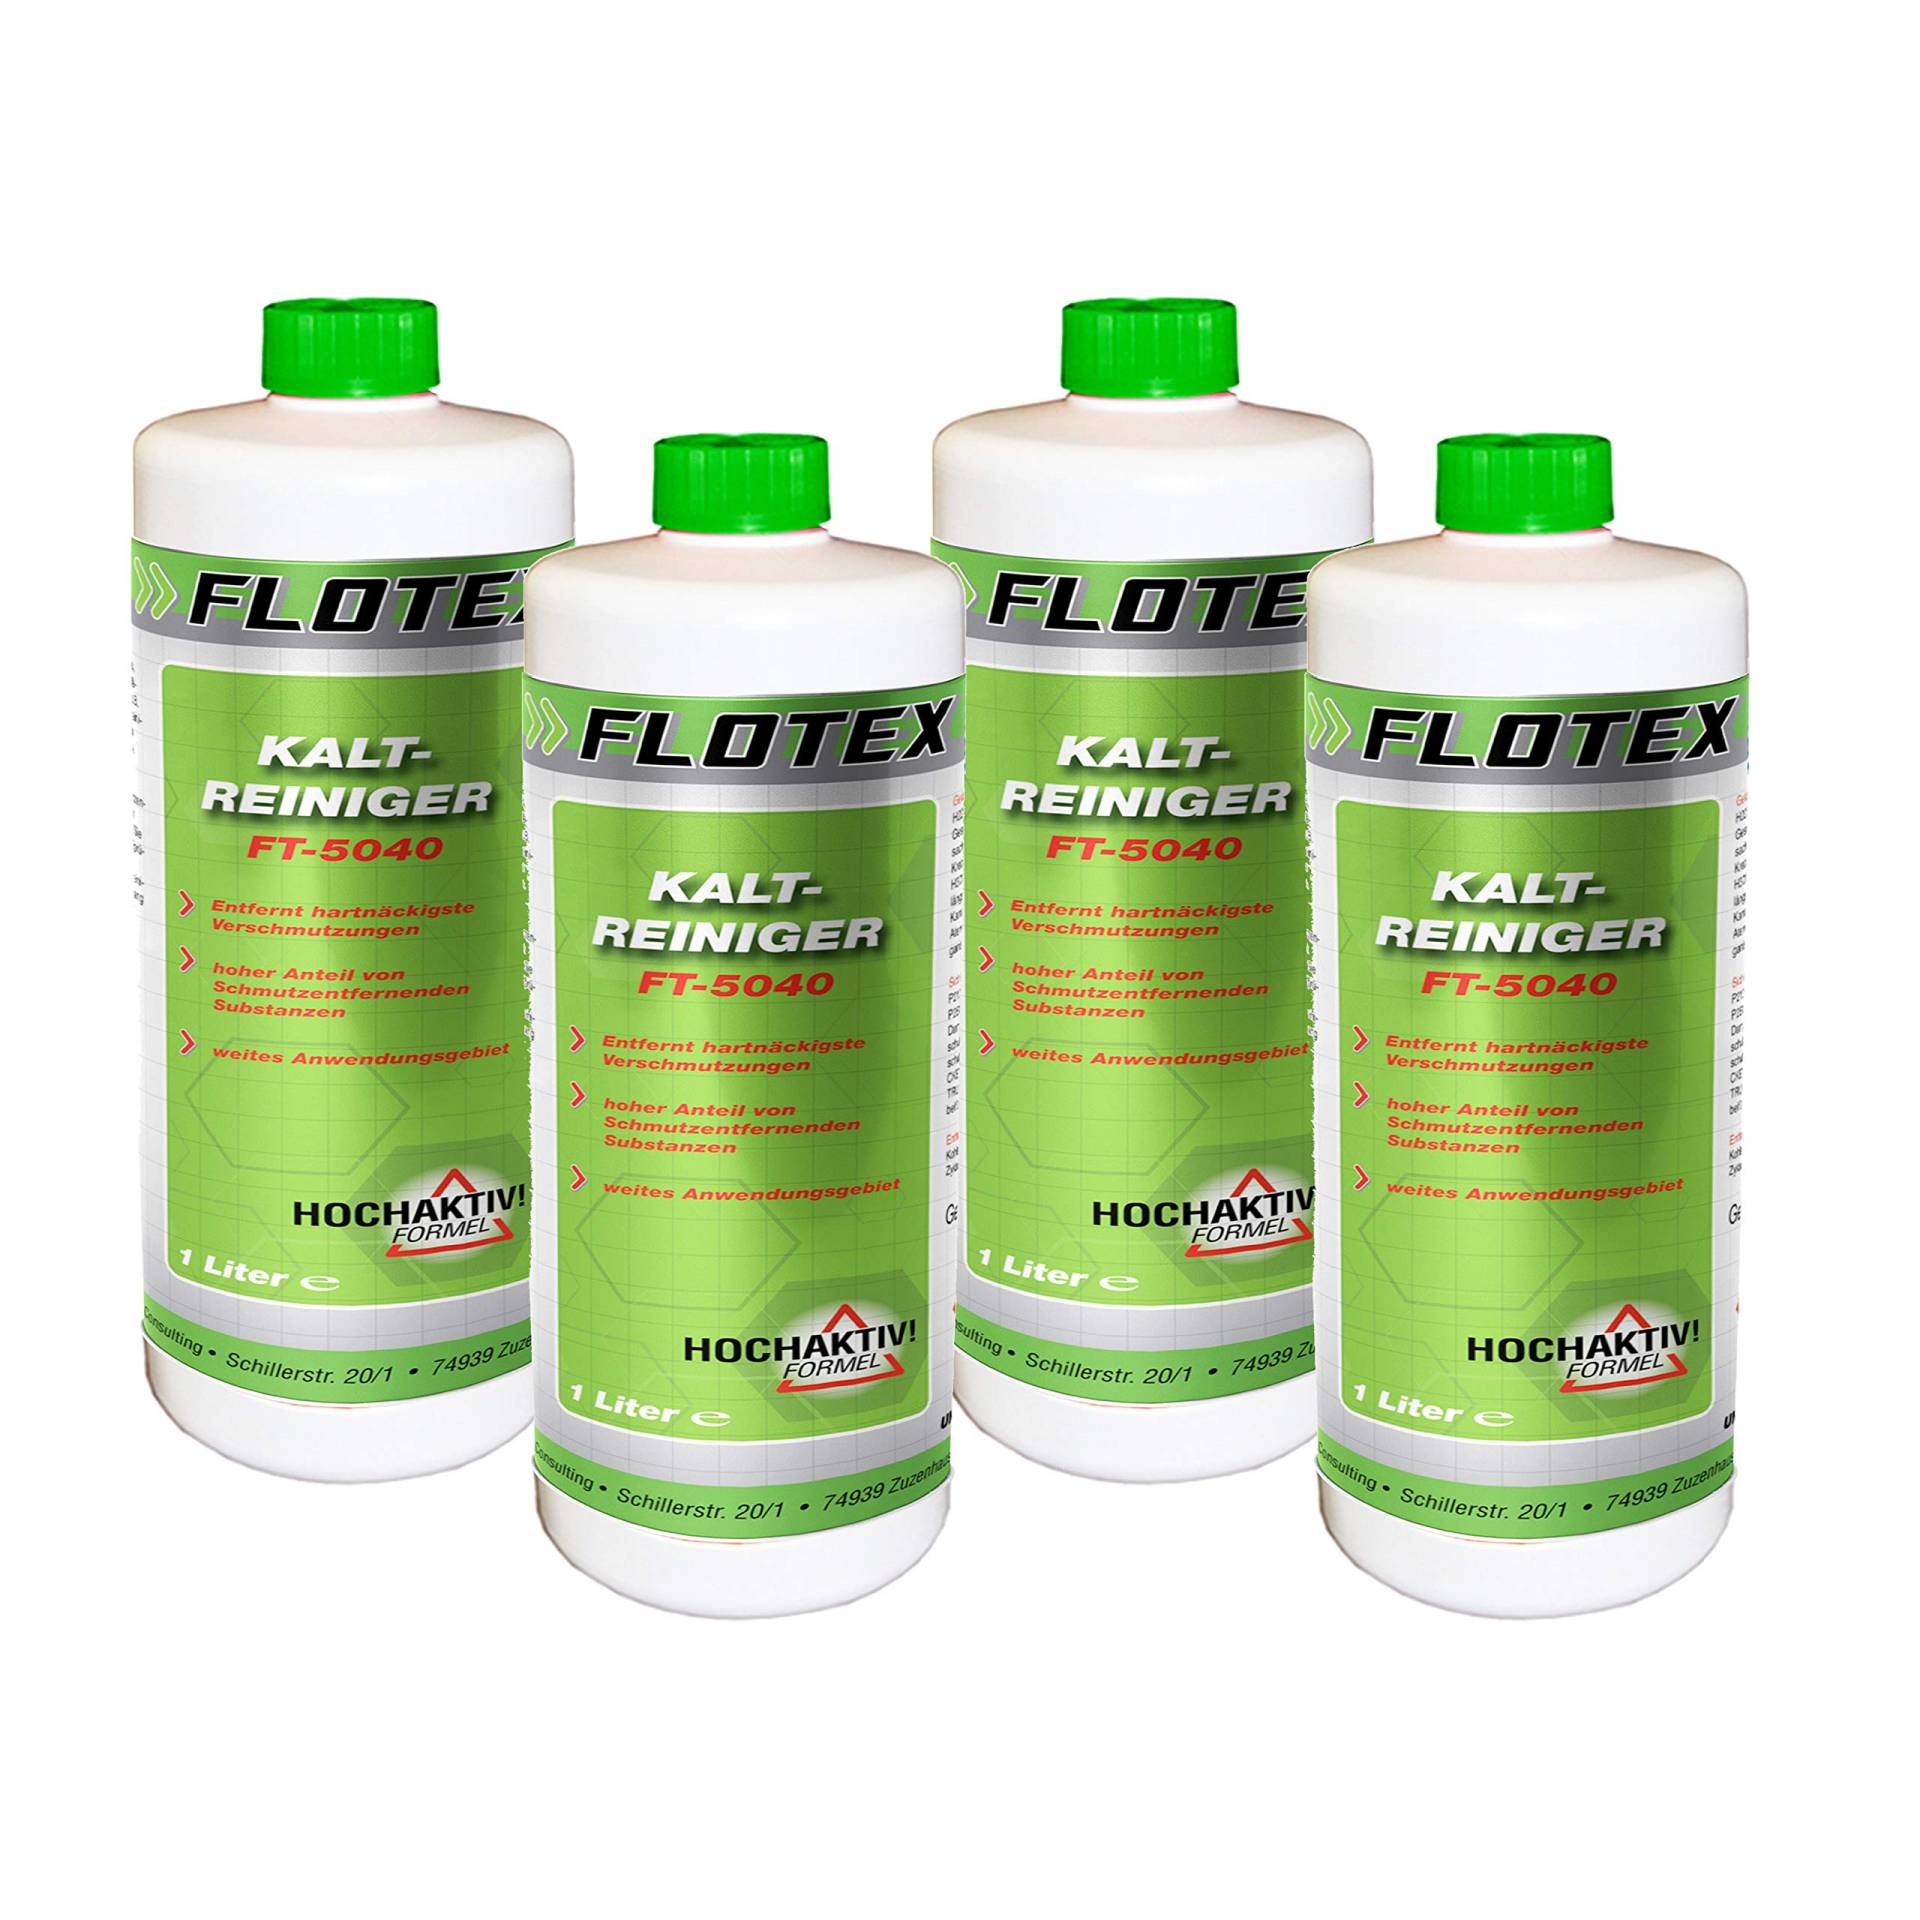 Flotex® Kaltreiniger 4x1L - Motorrad Reiniger entfernt Öl, Teer & Fett rückstandsfrei - Nicht korrosiver Auto Reiniger - hochwirksames Motor Reinigungsmittel von Flotex